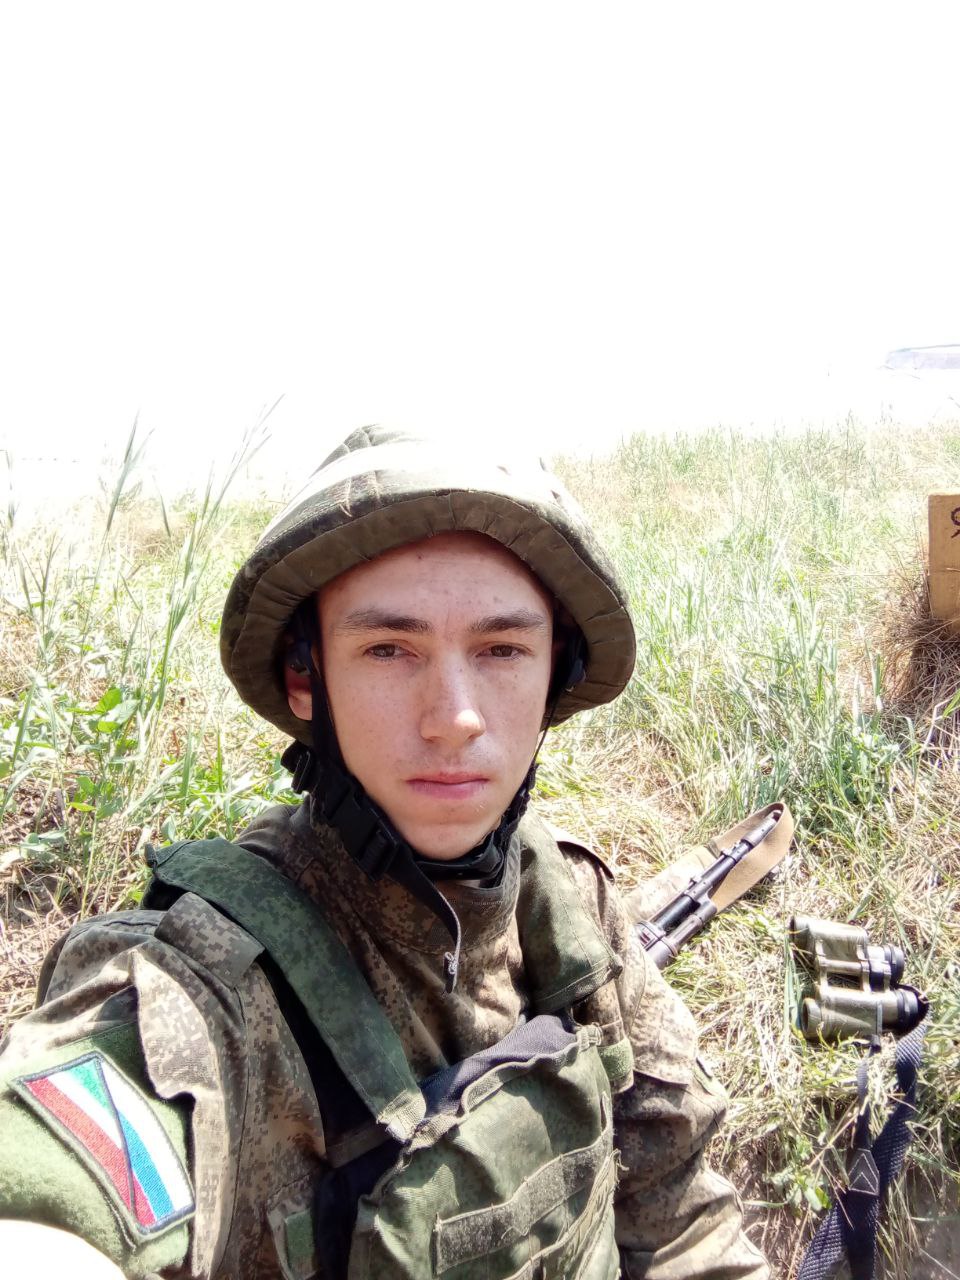 За образцовое выполнение боевых задач Дмитрий Волков награжден медалью "За воинскую доблесть" II степени